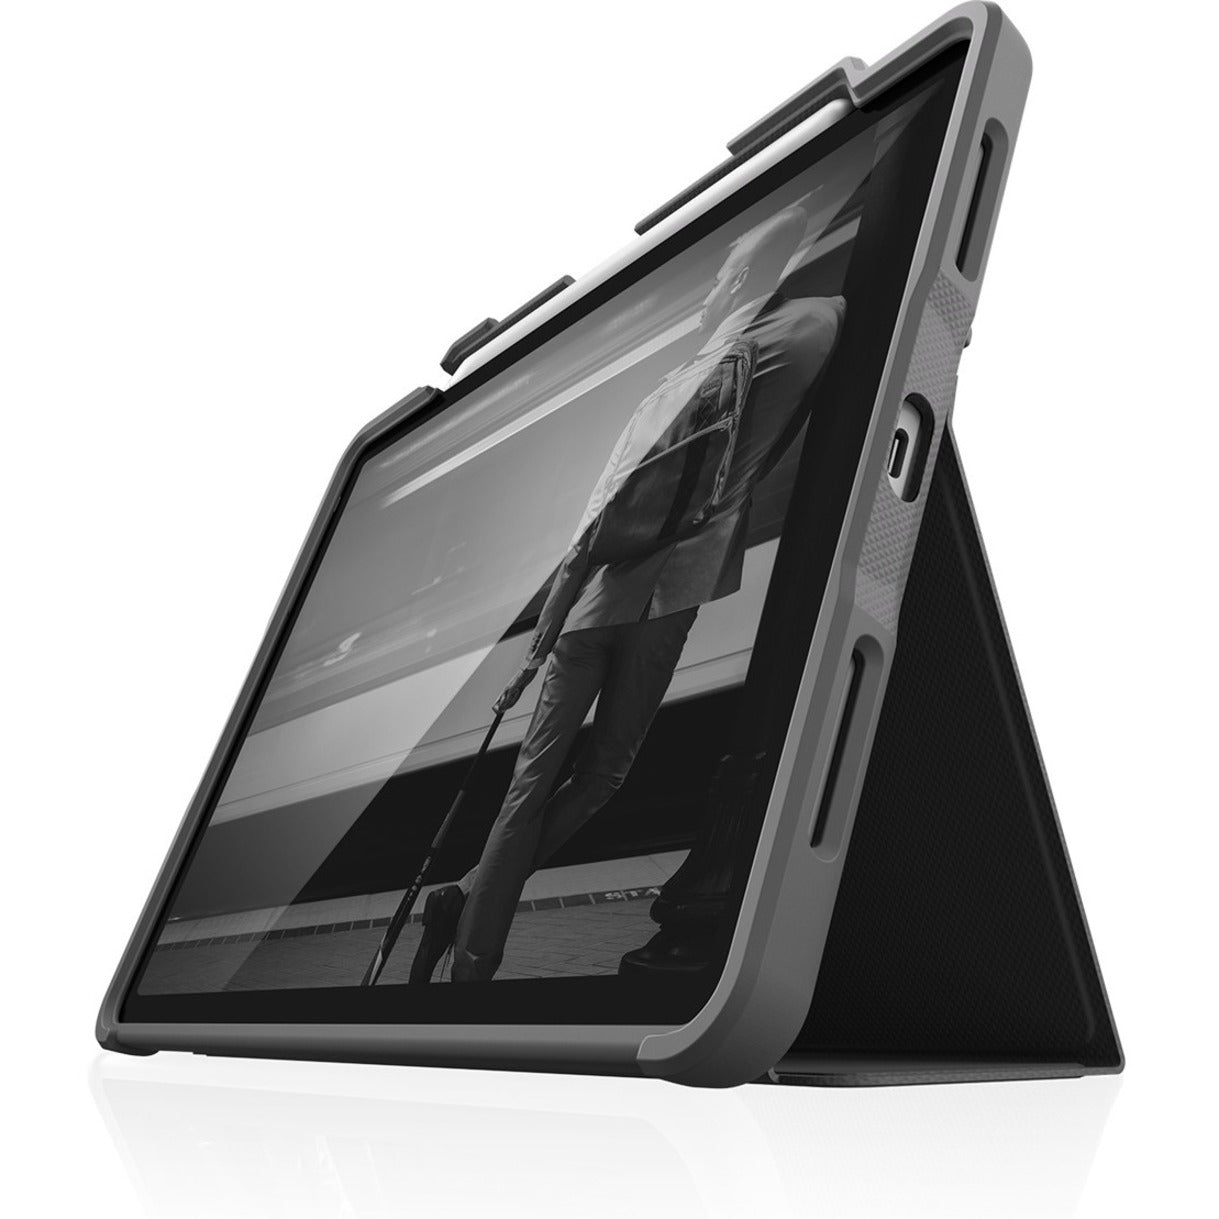 STM Goods STM-222-334KZ-01 DUX PLUS Modelos de iPad Pro con Almacenamiento de Apple Pencil (2021) Negro 11"  Marca: Productos de STM